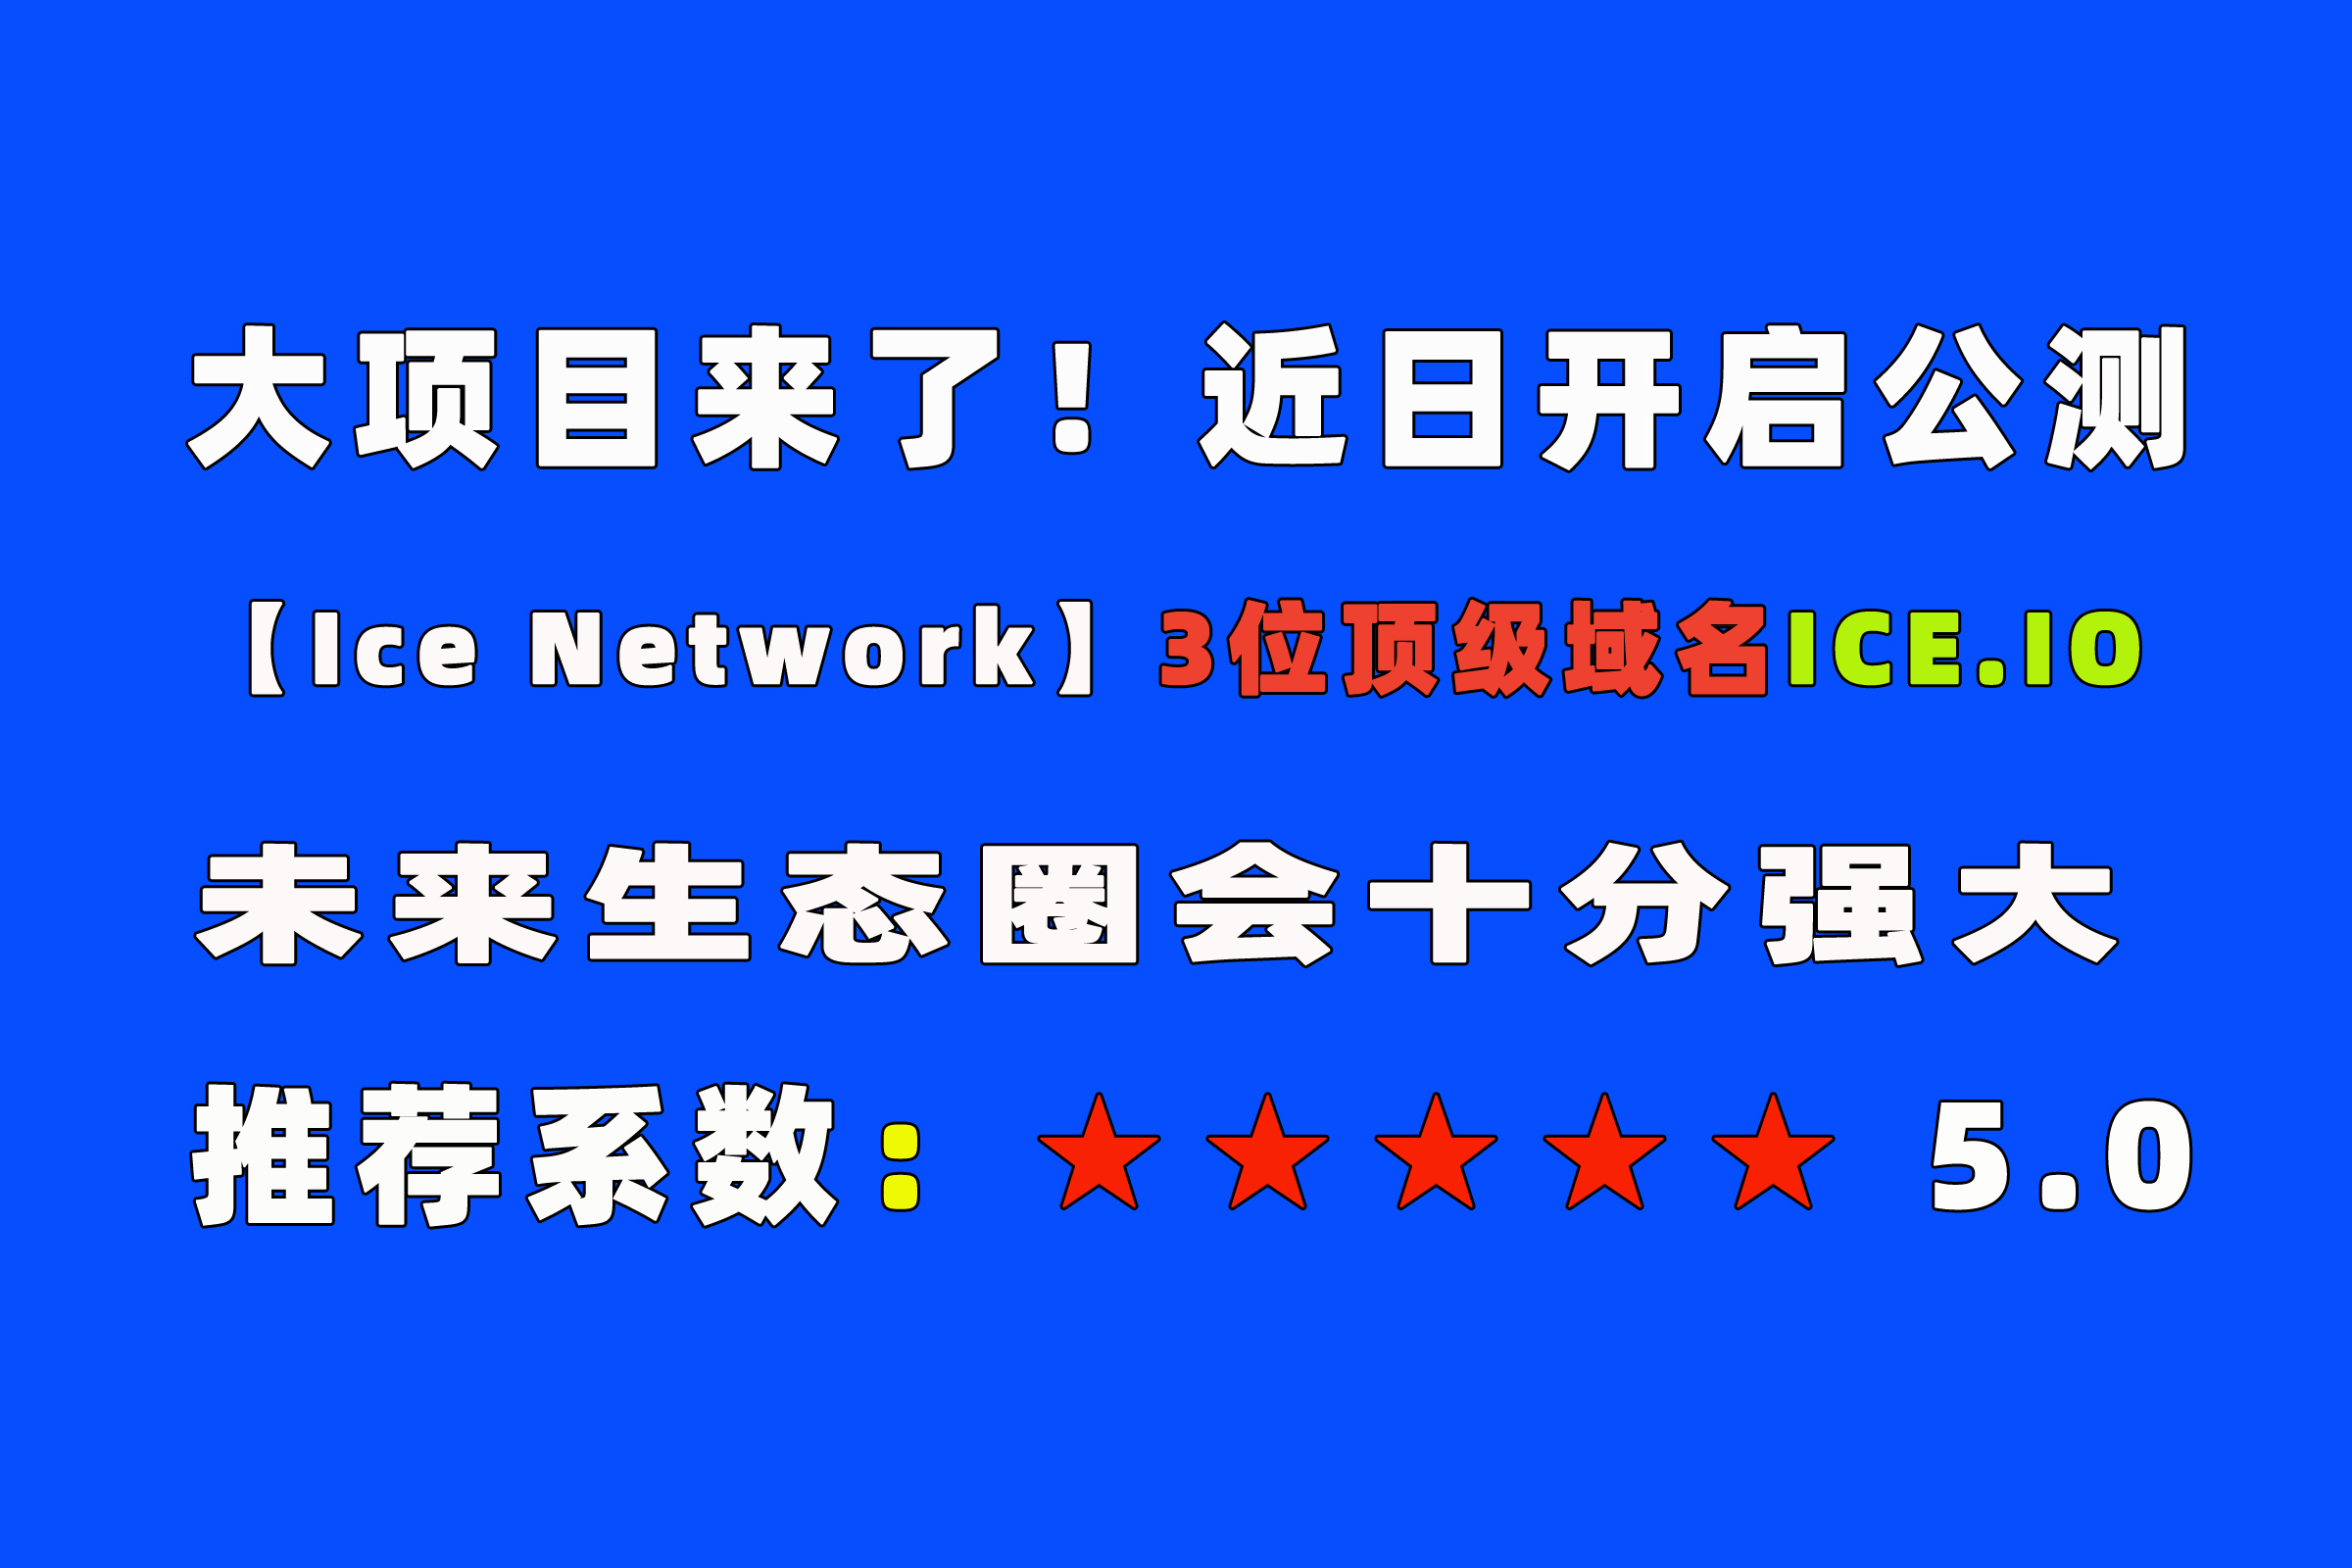 推荐系数5星，全球项目【Ice Network】3位顶级域名，全球顶尖团队！近日会公测挖K！